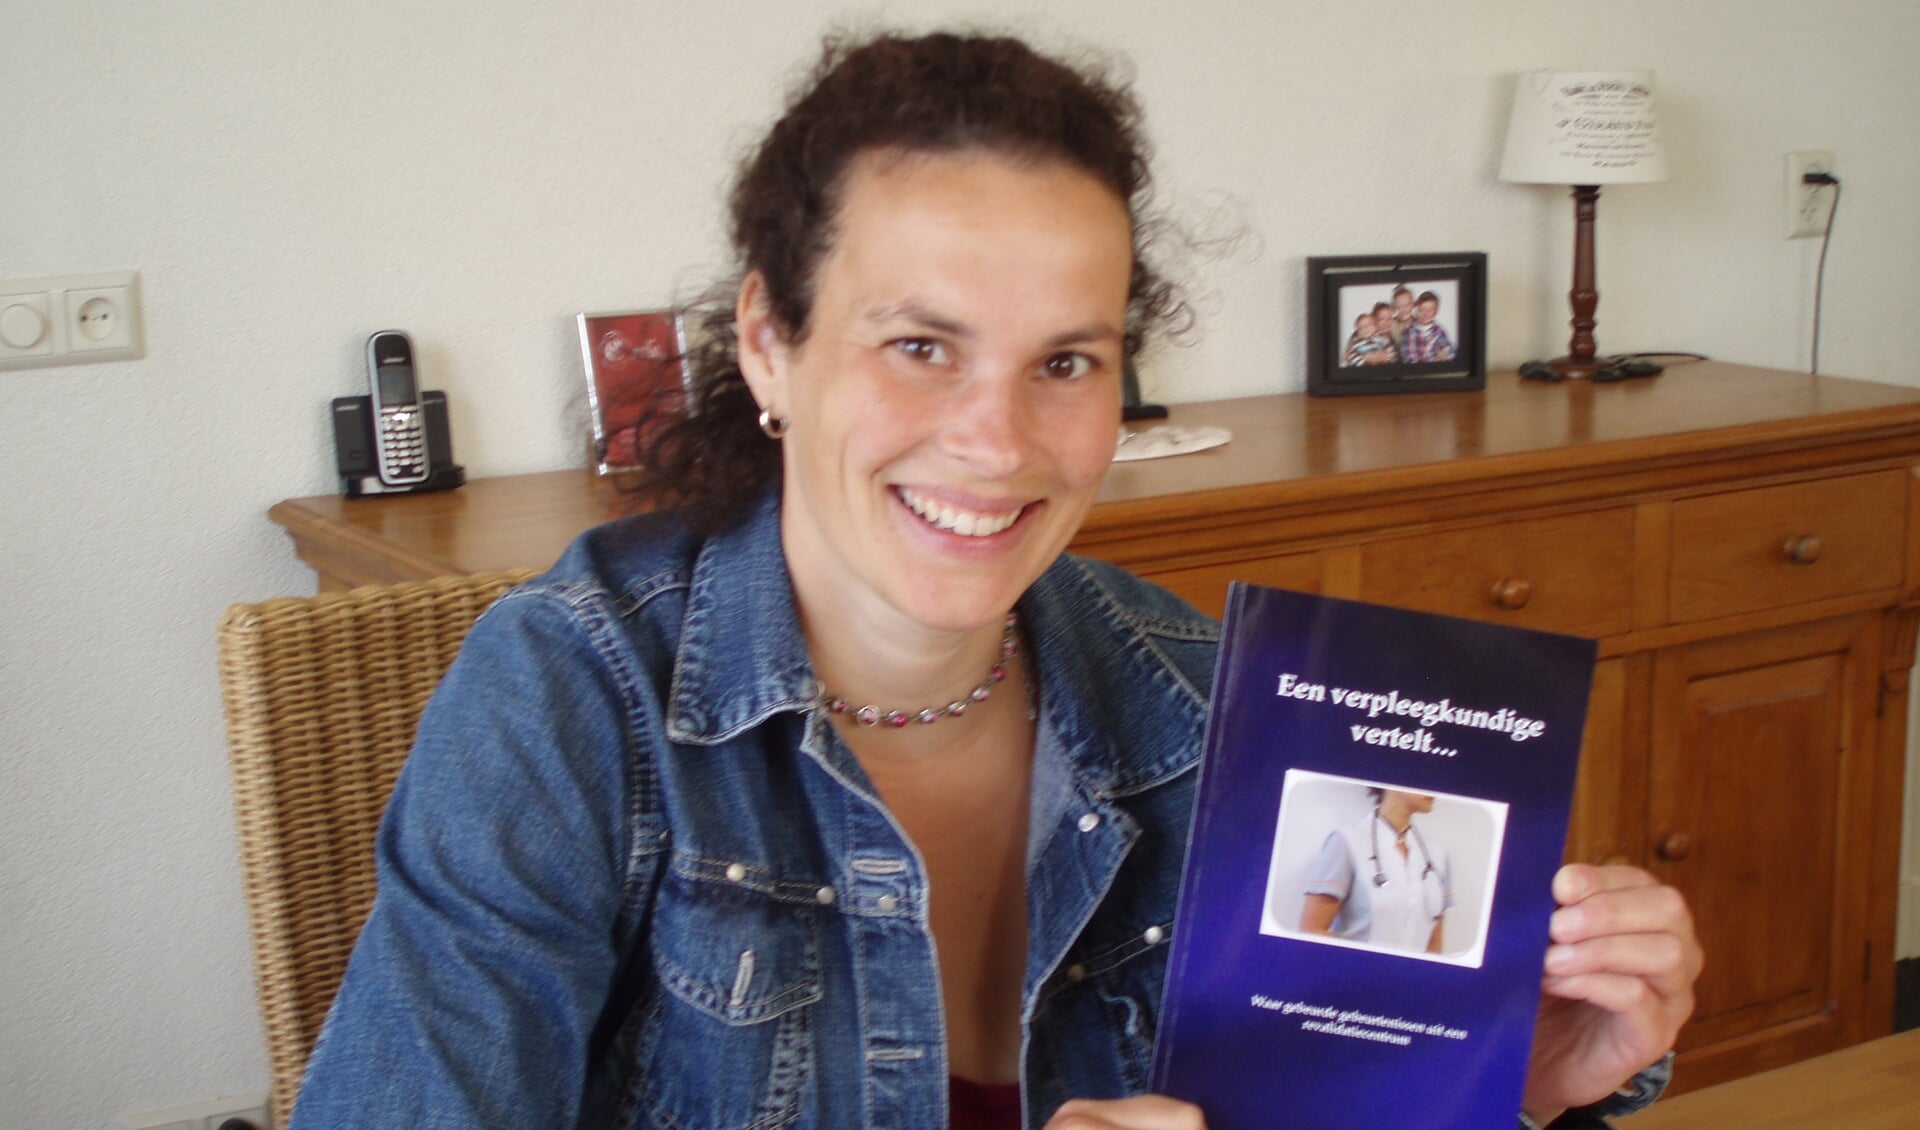  Carla Westeneng met haar boek vol ervaringsverhalen uit haar vakgebied.